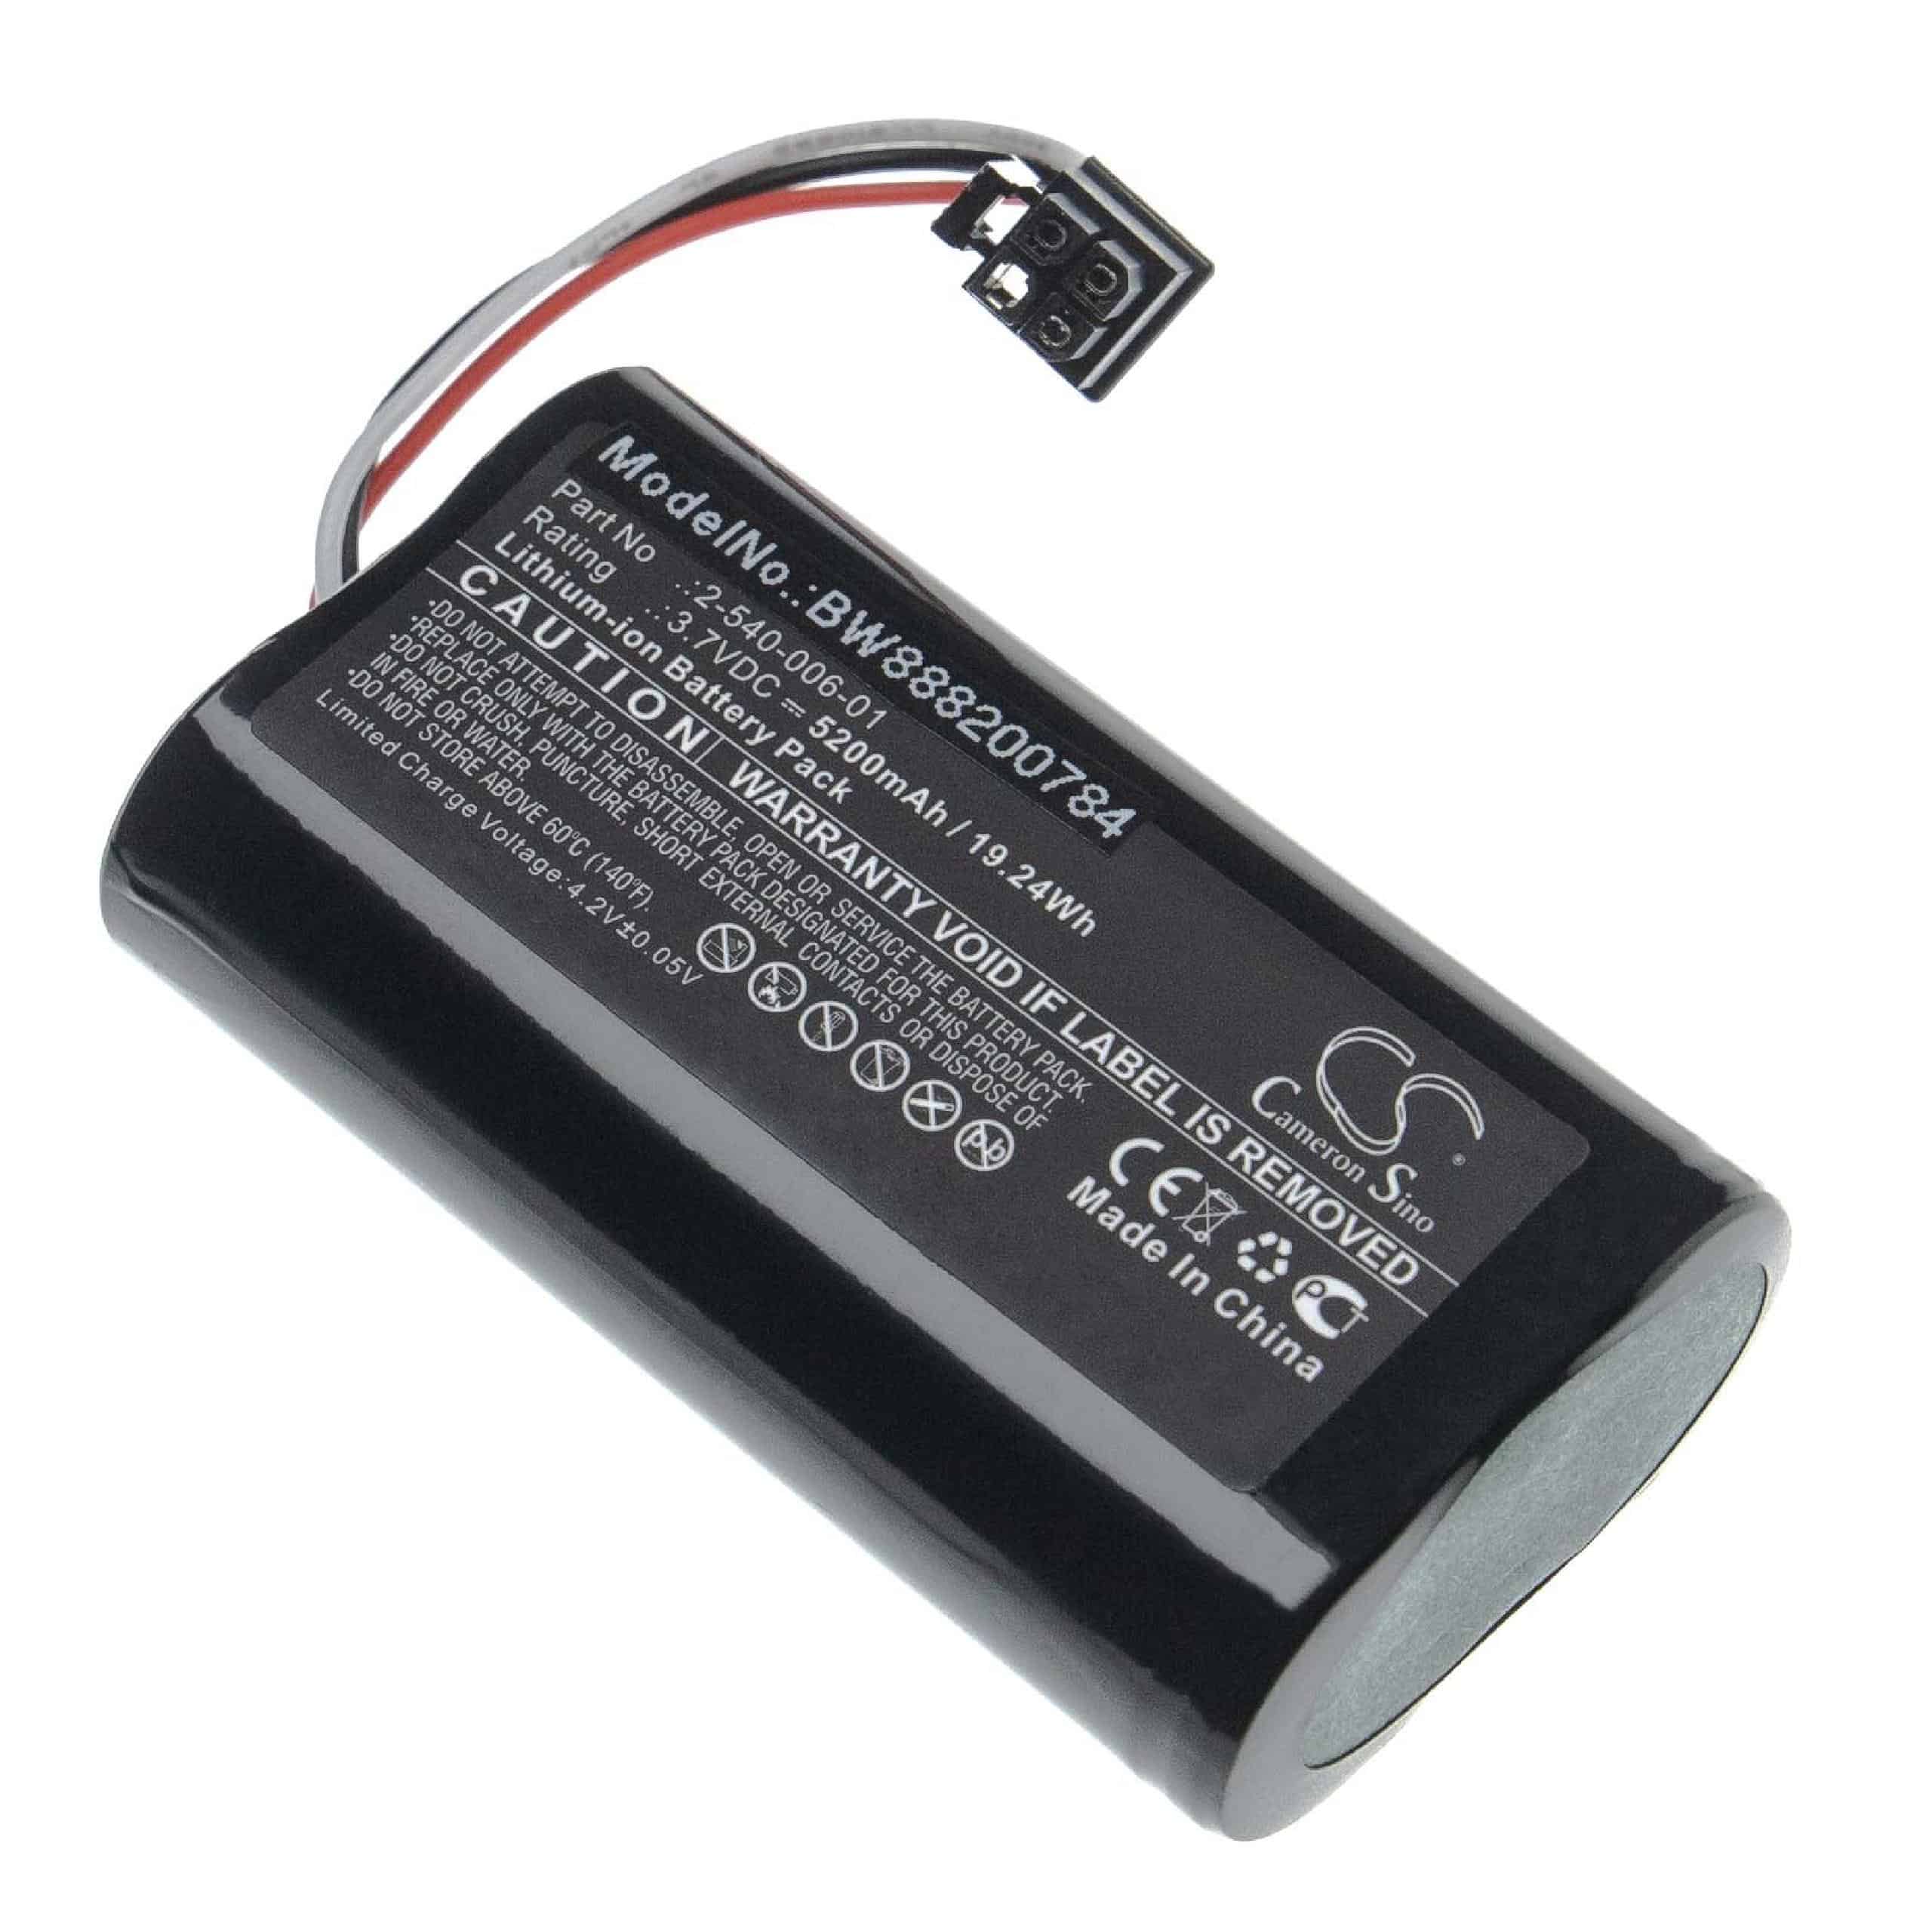 Batterie remplace Soundcast 2-540-006-01 pour enceinte Soundcast - 5200mAh 3,7V Li-ion